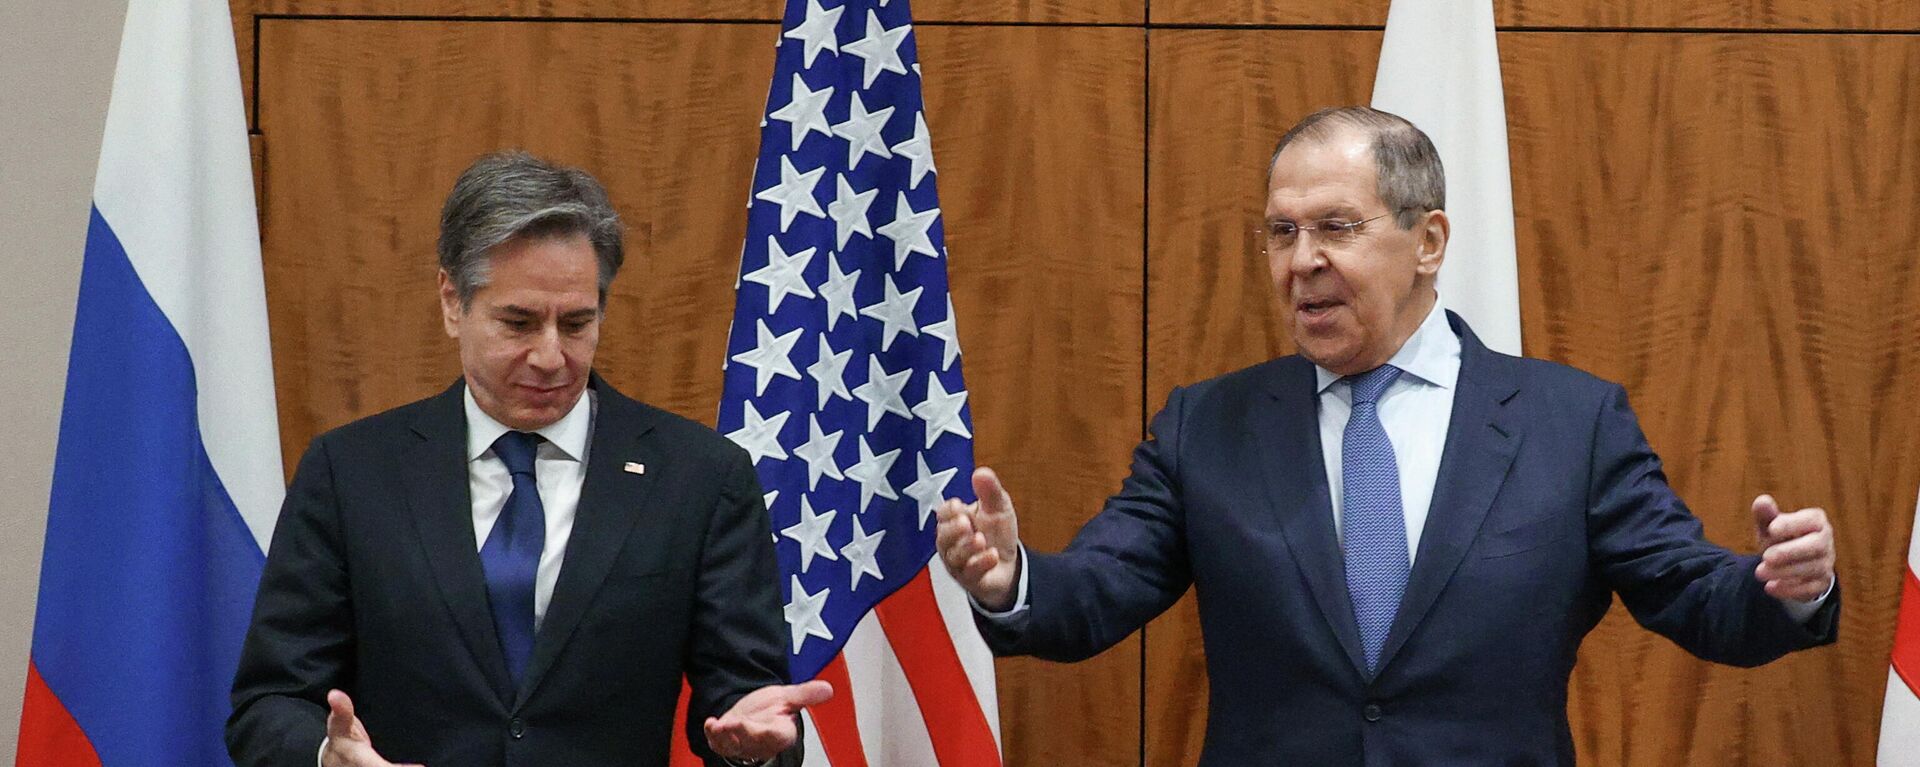 ABD ve Rusya Dışişleri Bakanları Antony Blinken ile Sergey Lavrov'un Cenevre görüşmesinden pozlar - Sputnik Türkiye, 1920, 28.07.2022